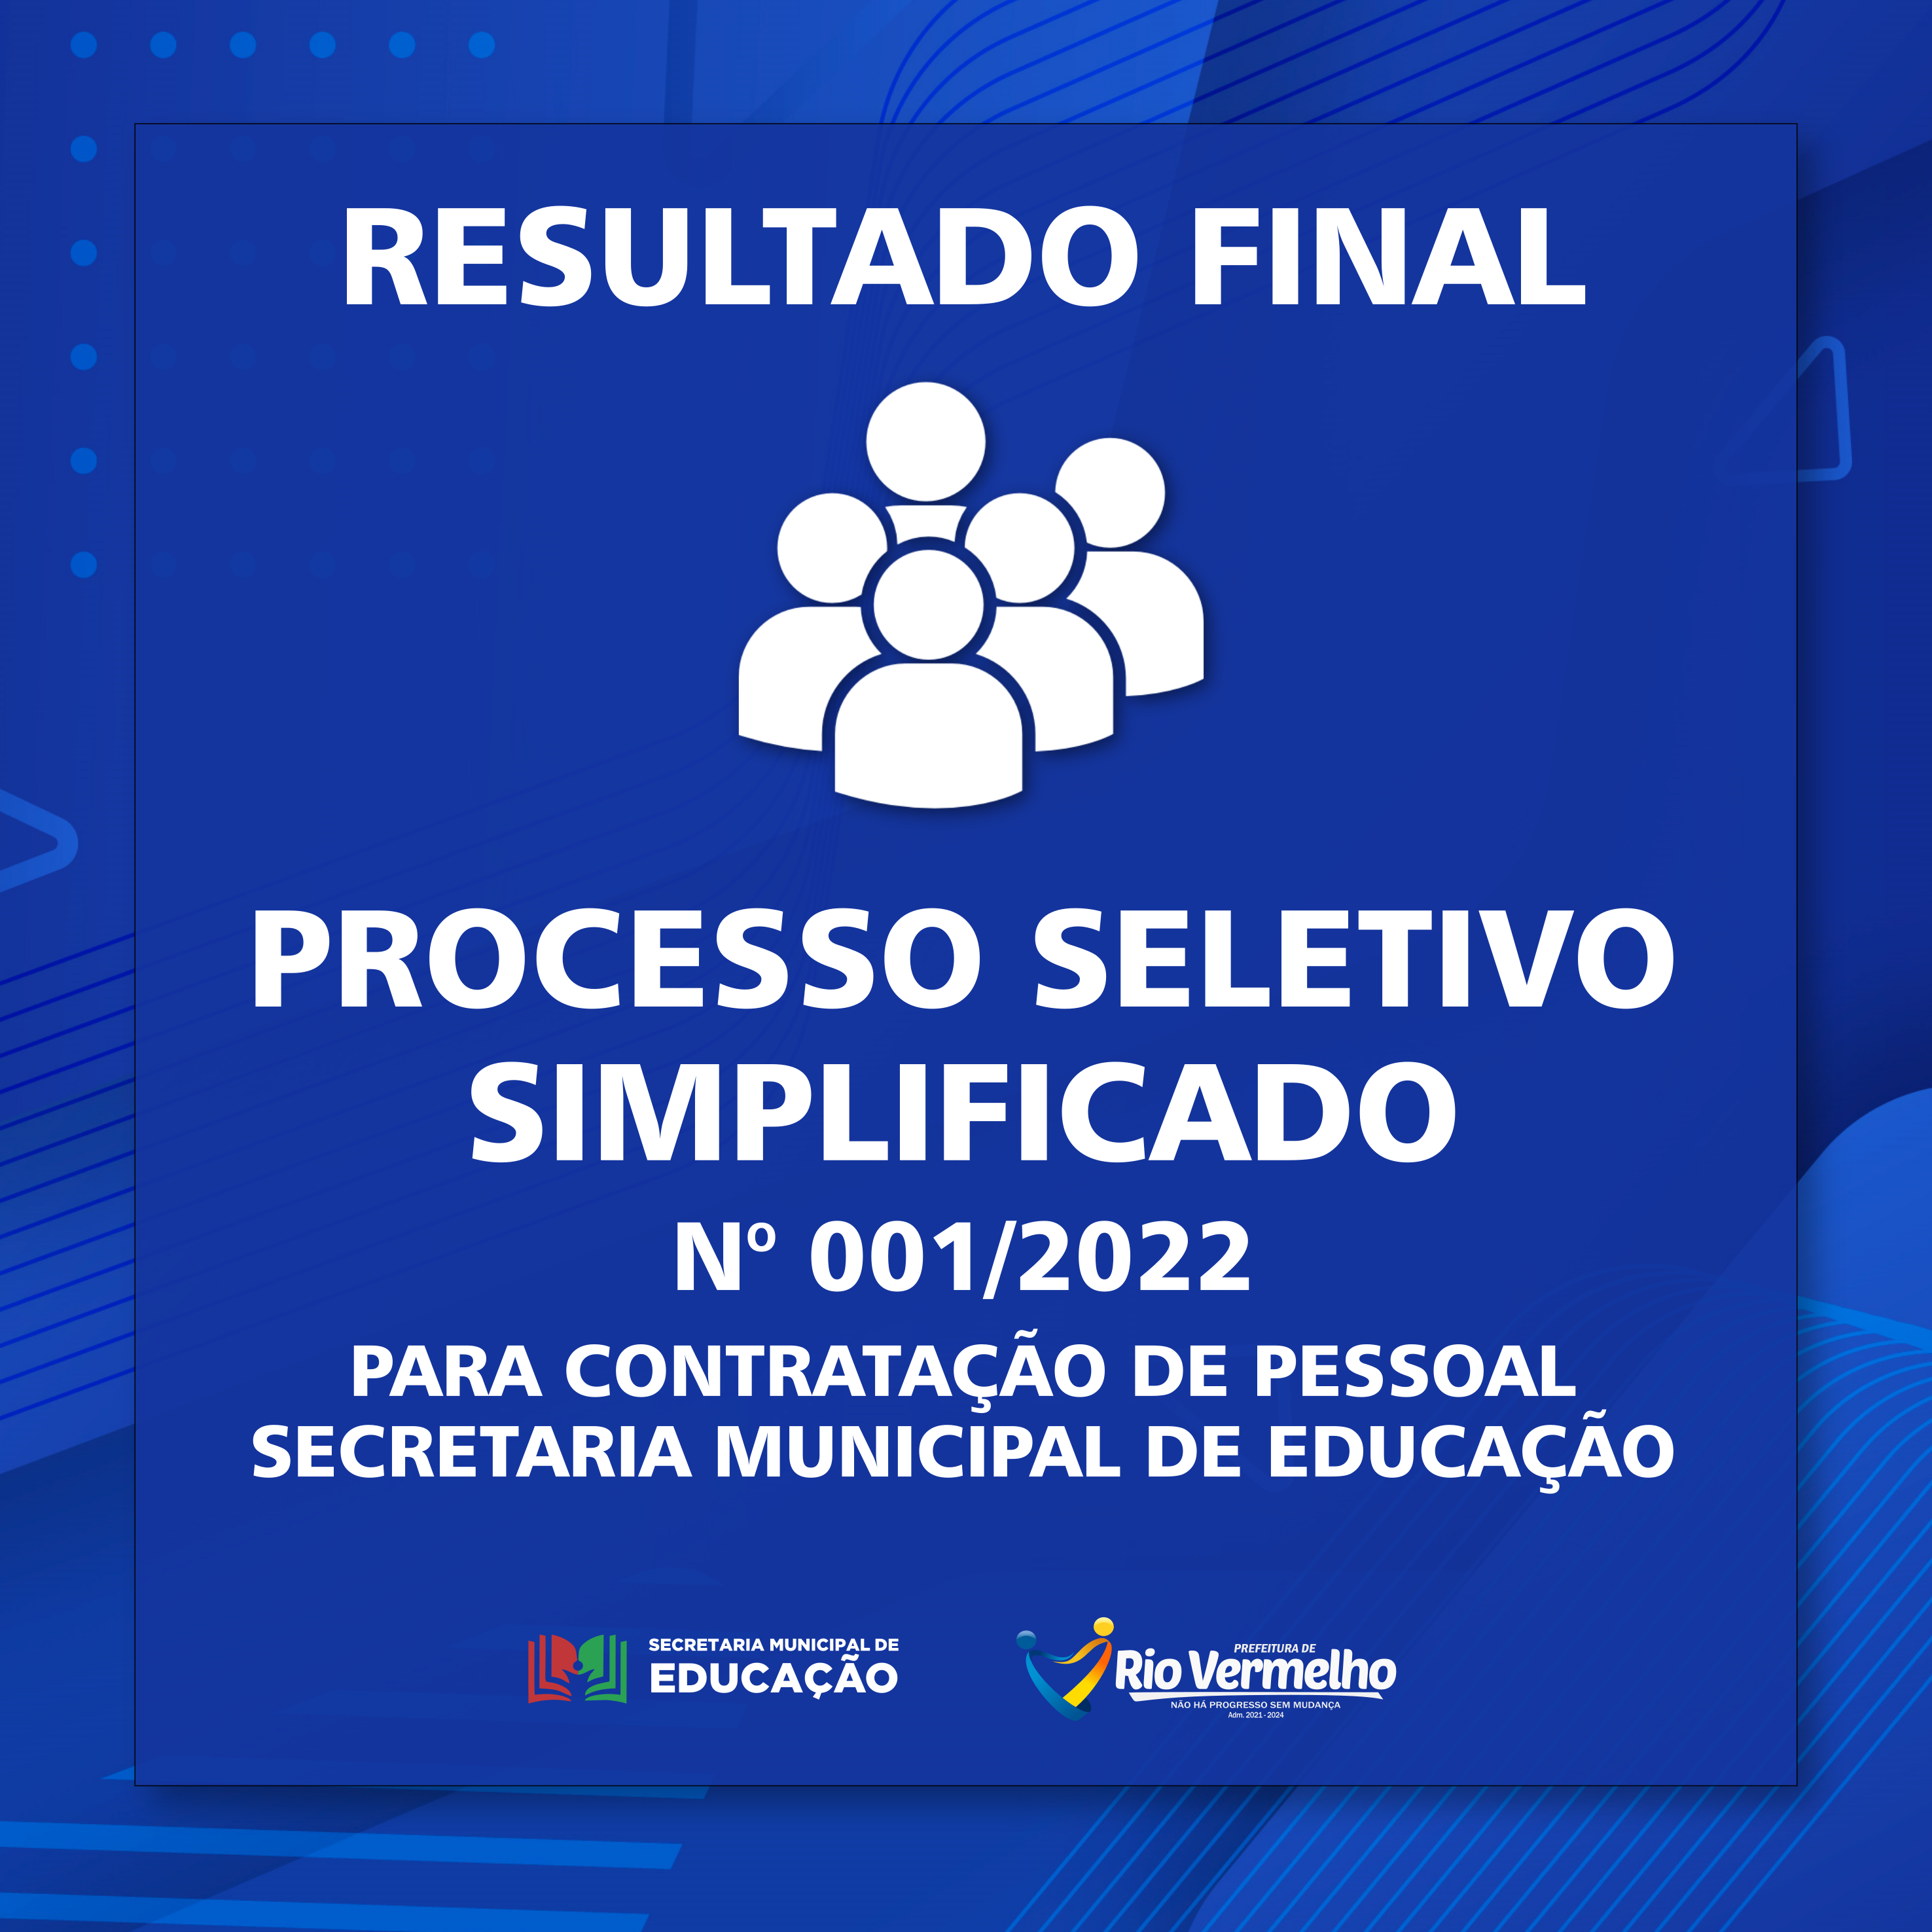 You are currently viewing RESULTADO FINAL DO PROCESSO SELETIVO SIMPLIFICADO Nº 001/2022 – SEC. MUN. DE EDUCAÇÃO